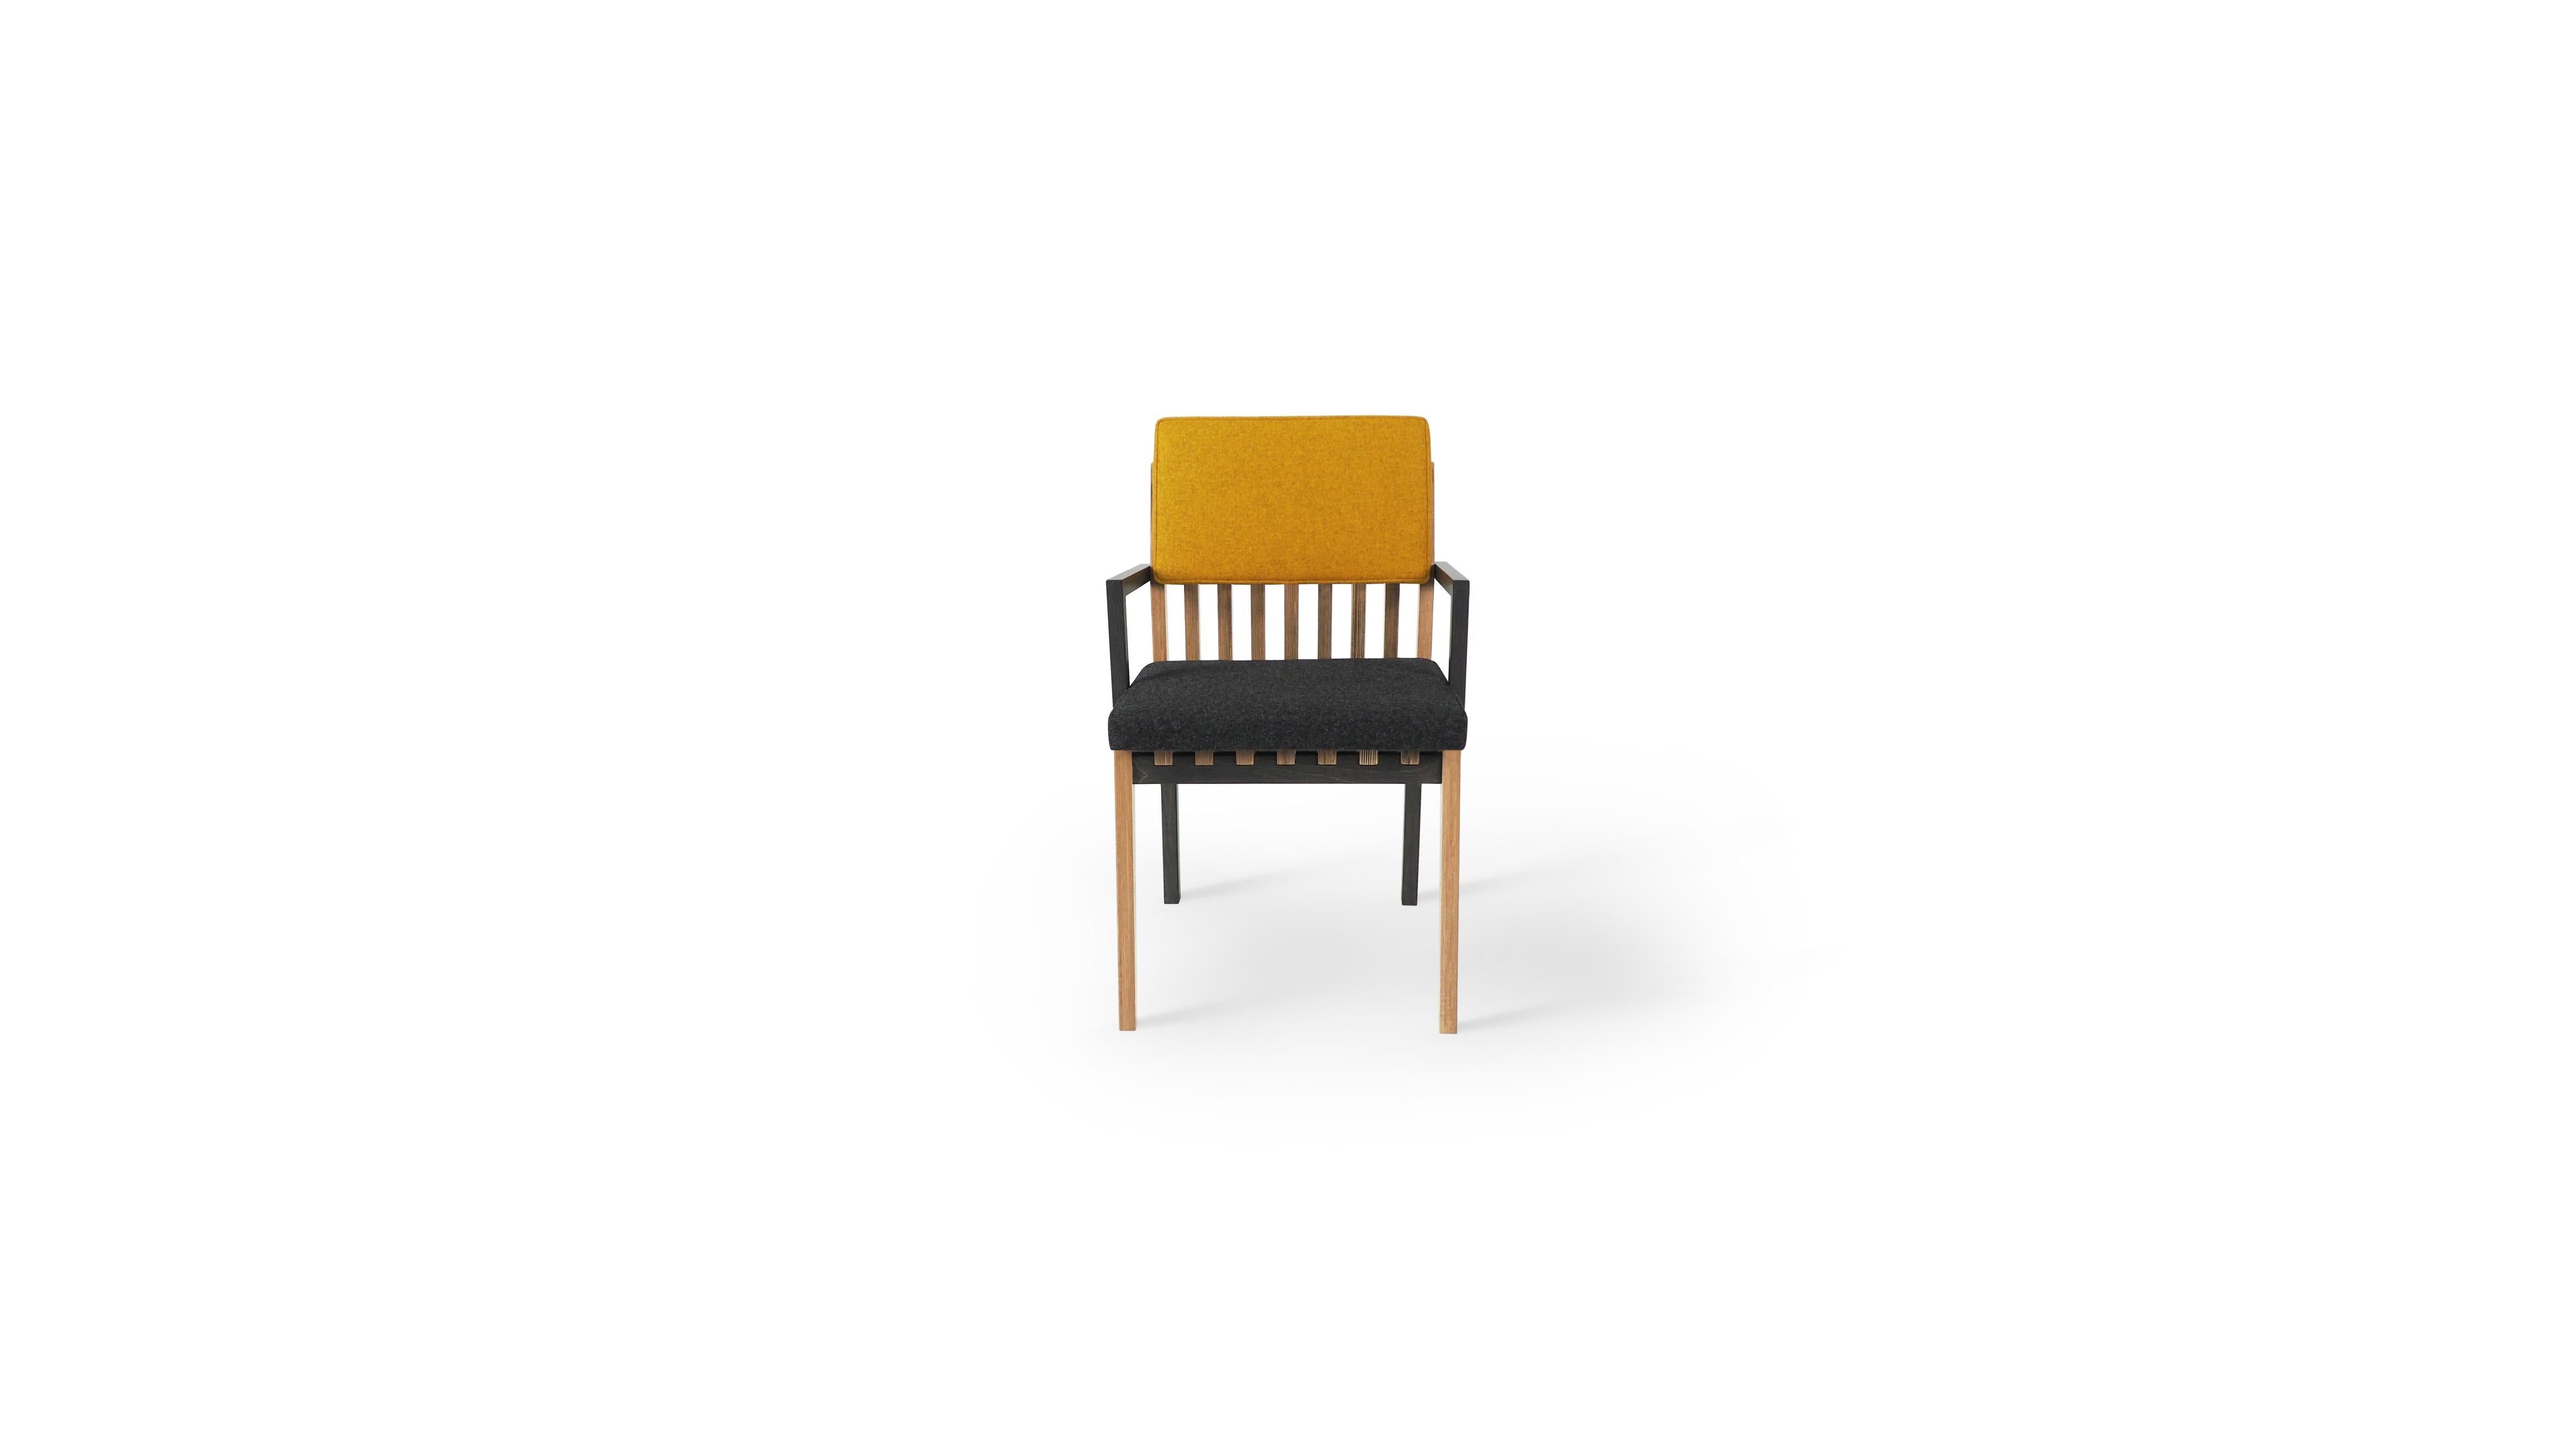 Dieser Esszimmerstuhl ist vom dänischen Design und dem portugiesischen Erbe inspiriert und wird mit modernsten Produktionsmethoden hergestellt, um Ihnen ein zeitloses und dennoch hochmodernes Design zu bieten.
Die einzigartigen Armlehnen des Stuhls